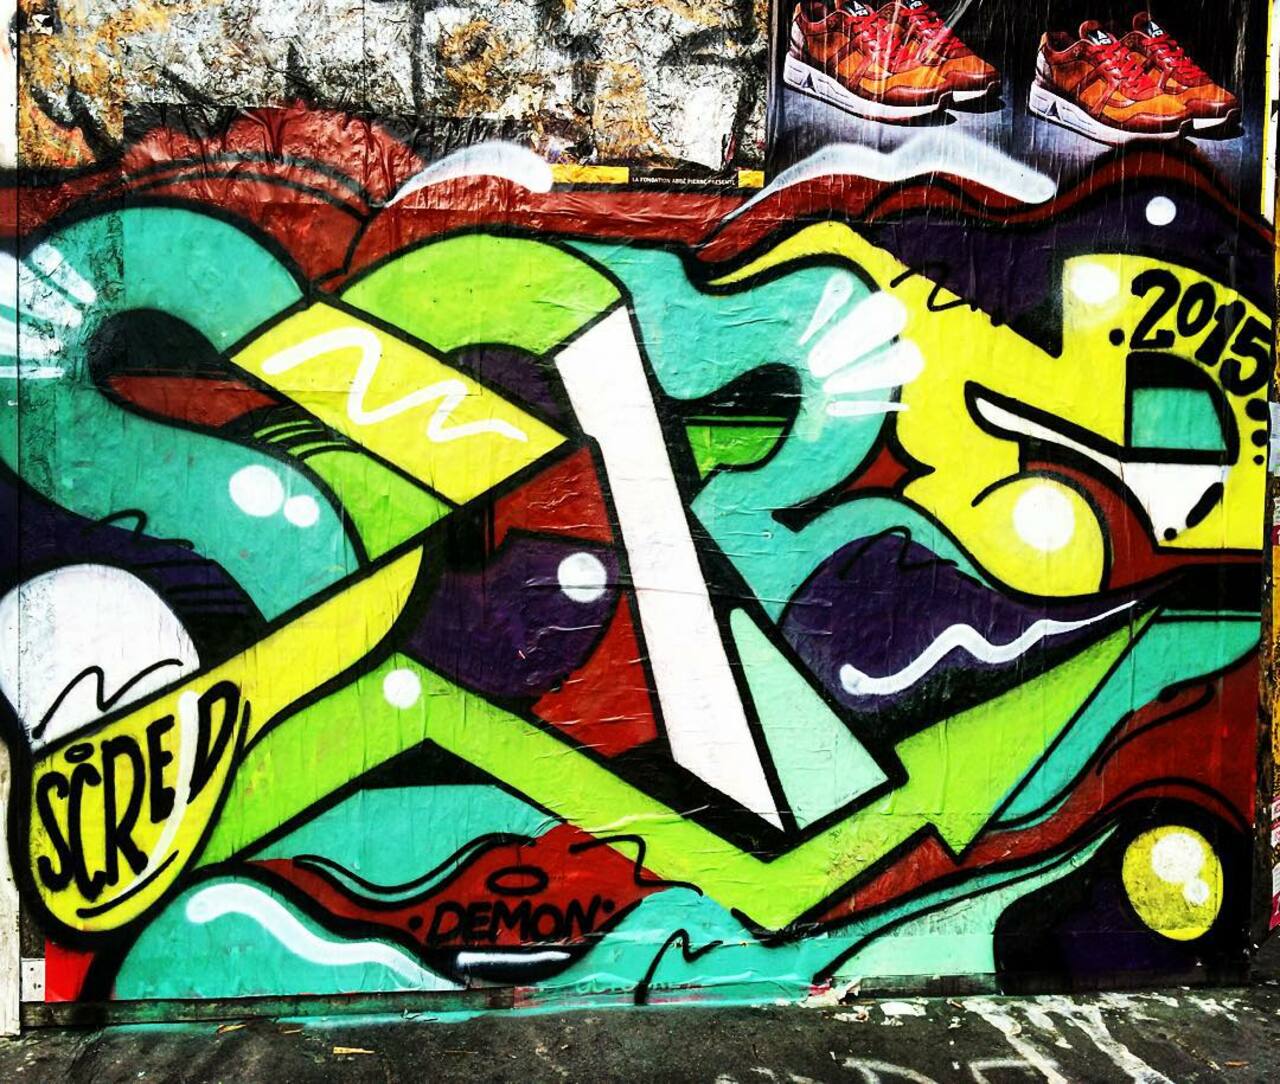 #Paris #graffiti photo by @julosteart http://ift.tt/1OdTsc4 #StreetArt http://t.co/MWn7d4Ihn0